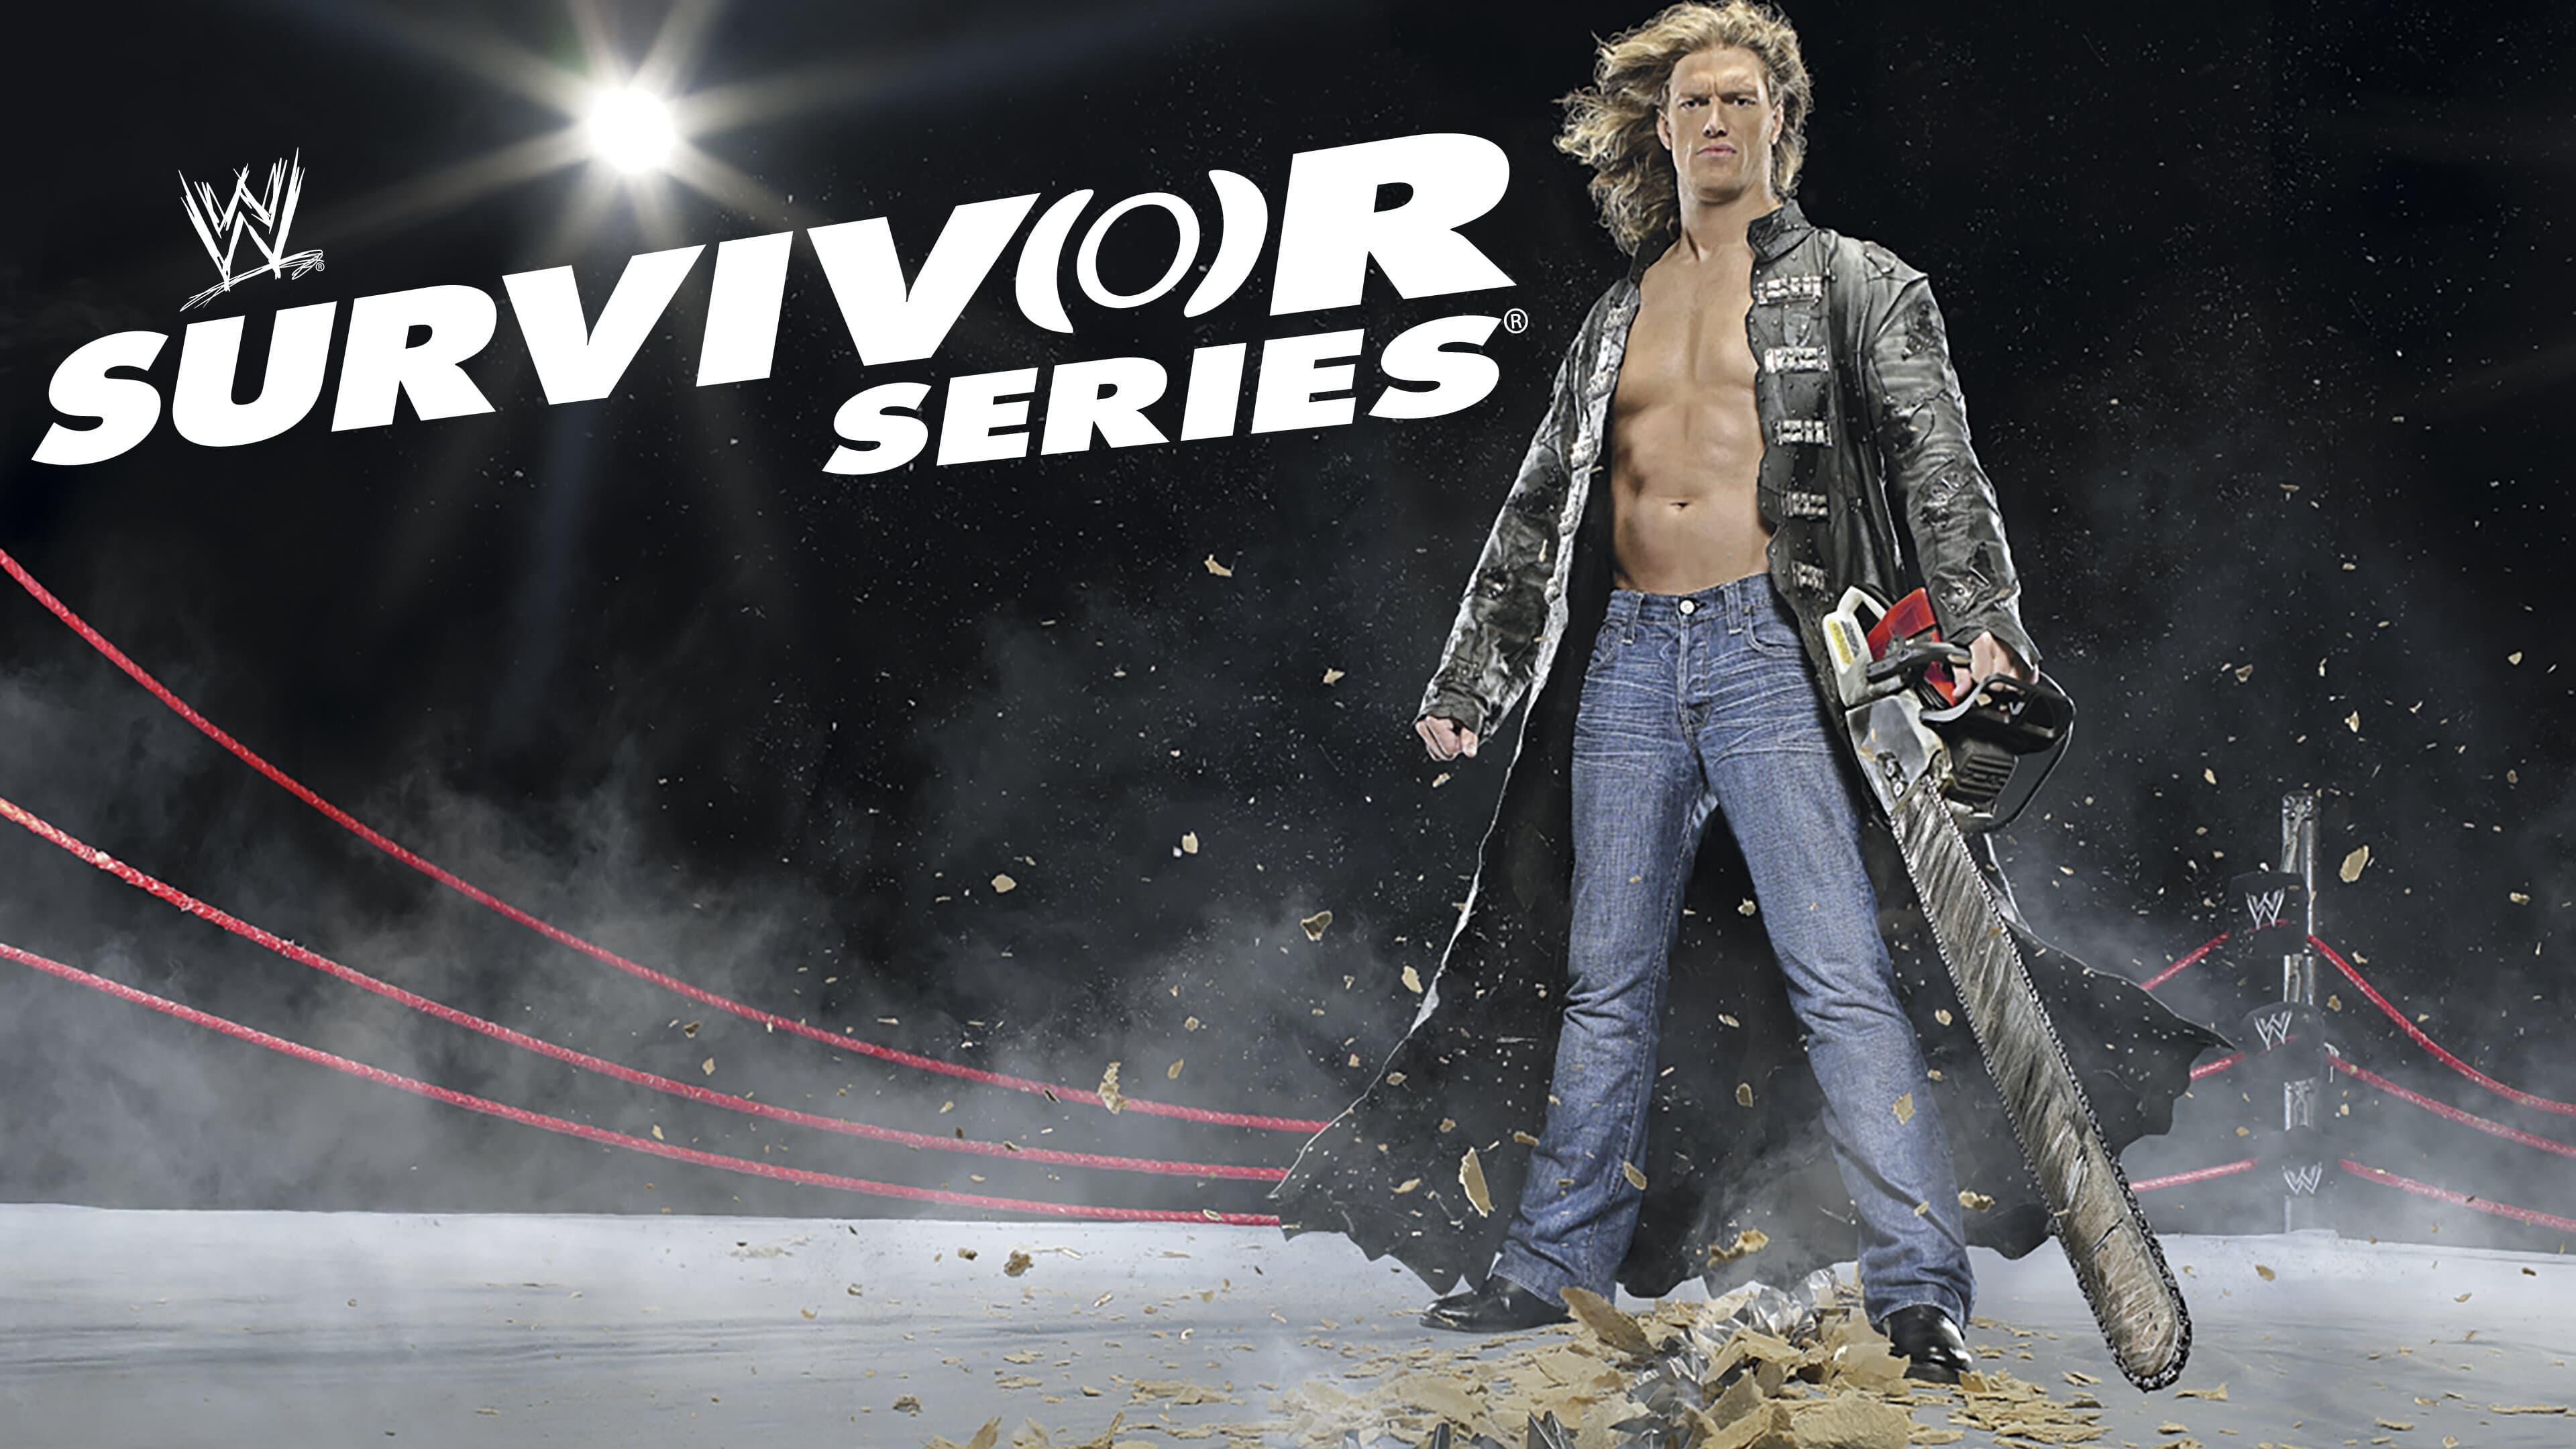 WWE Survivor Series 2007 backdrop